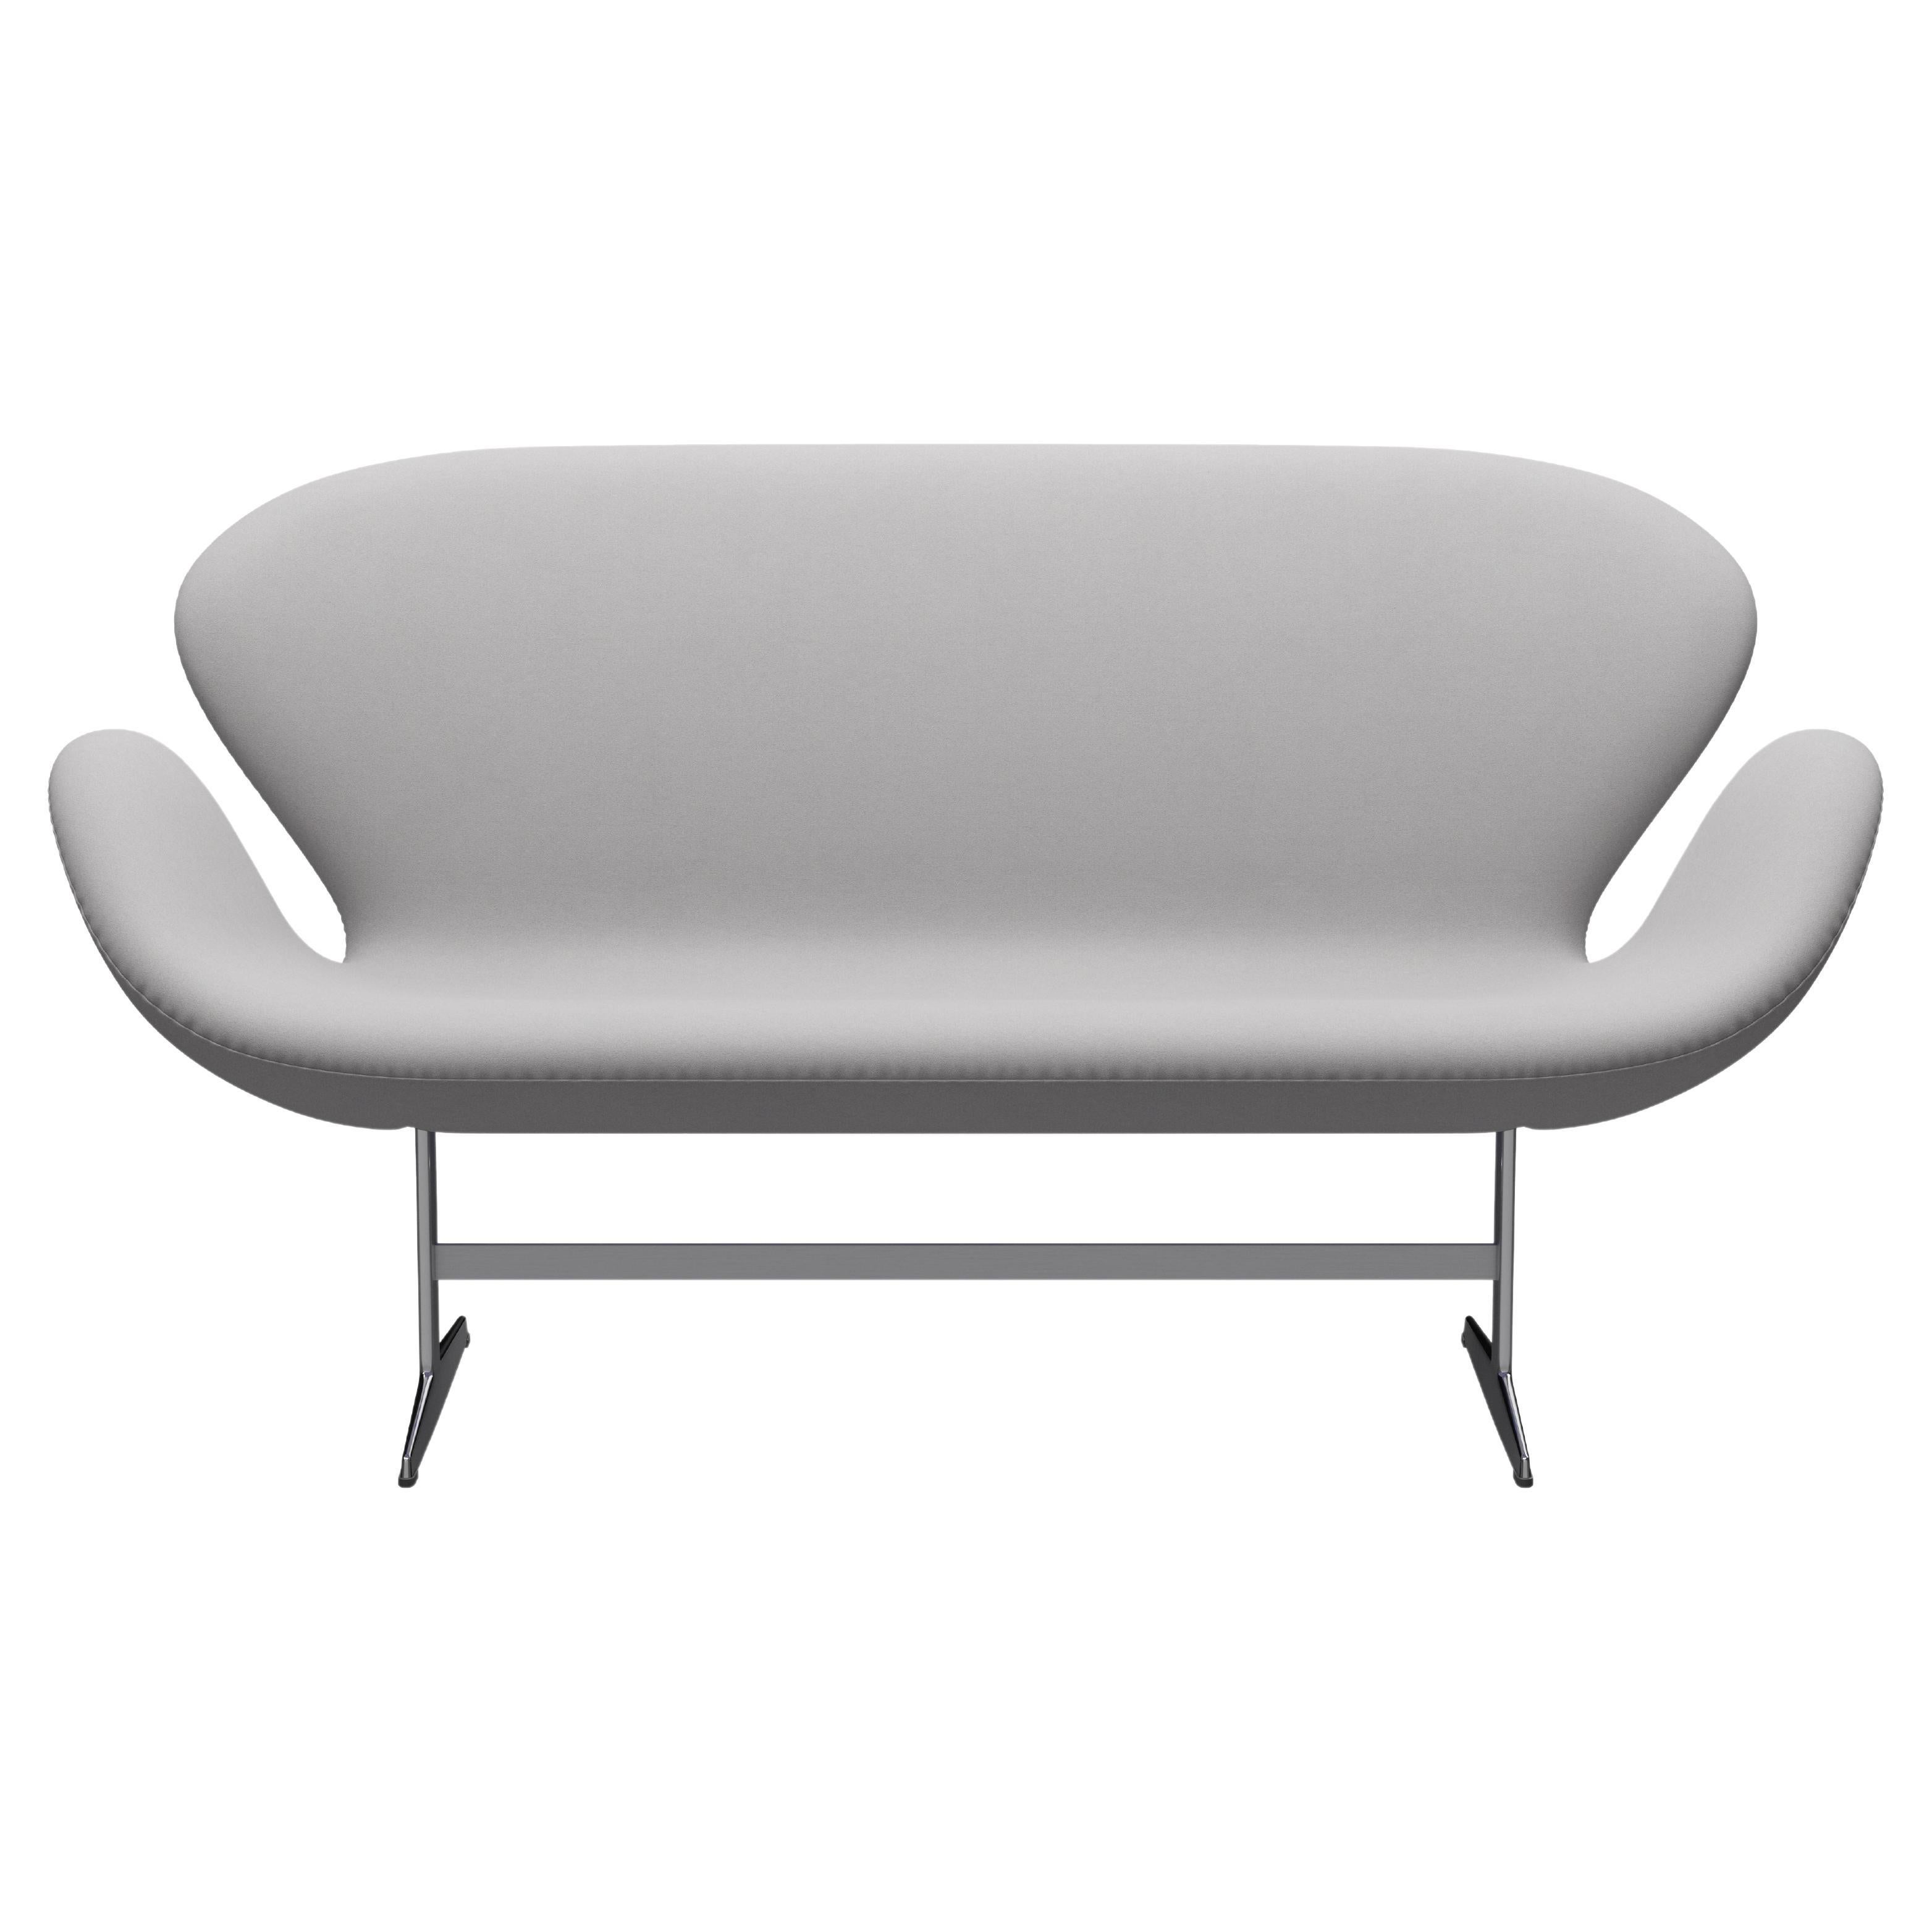 Arne Jacobsen 'Swan' Sofa for Fritz Hansen in Fabric Upholstery (Cat. 3) For Sale